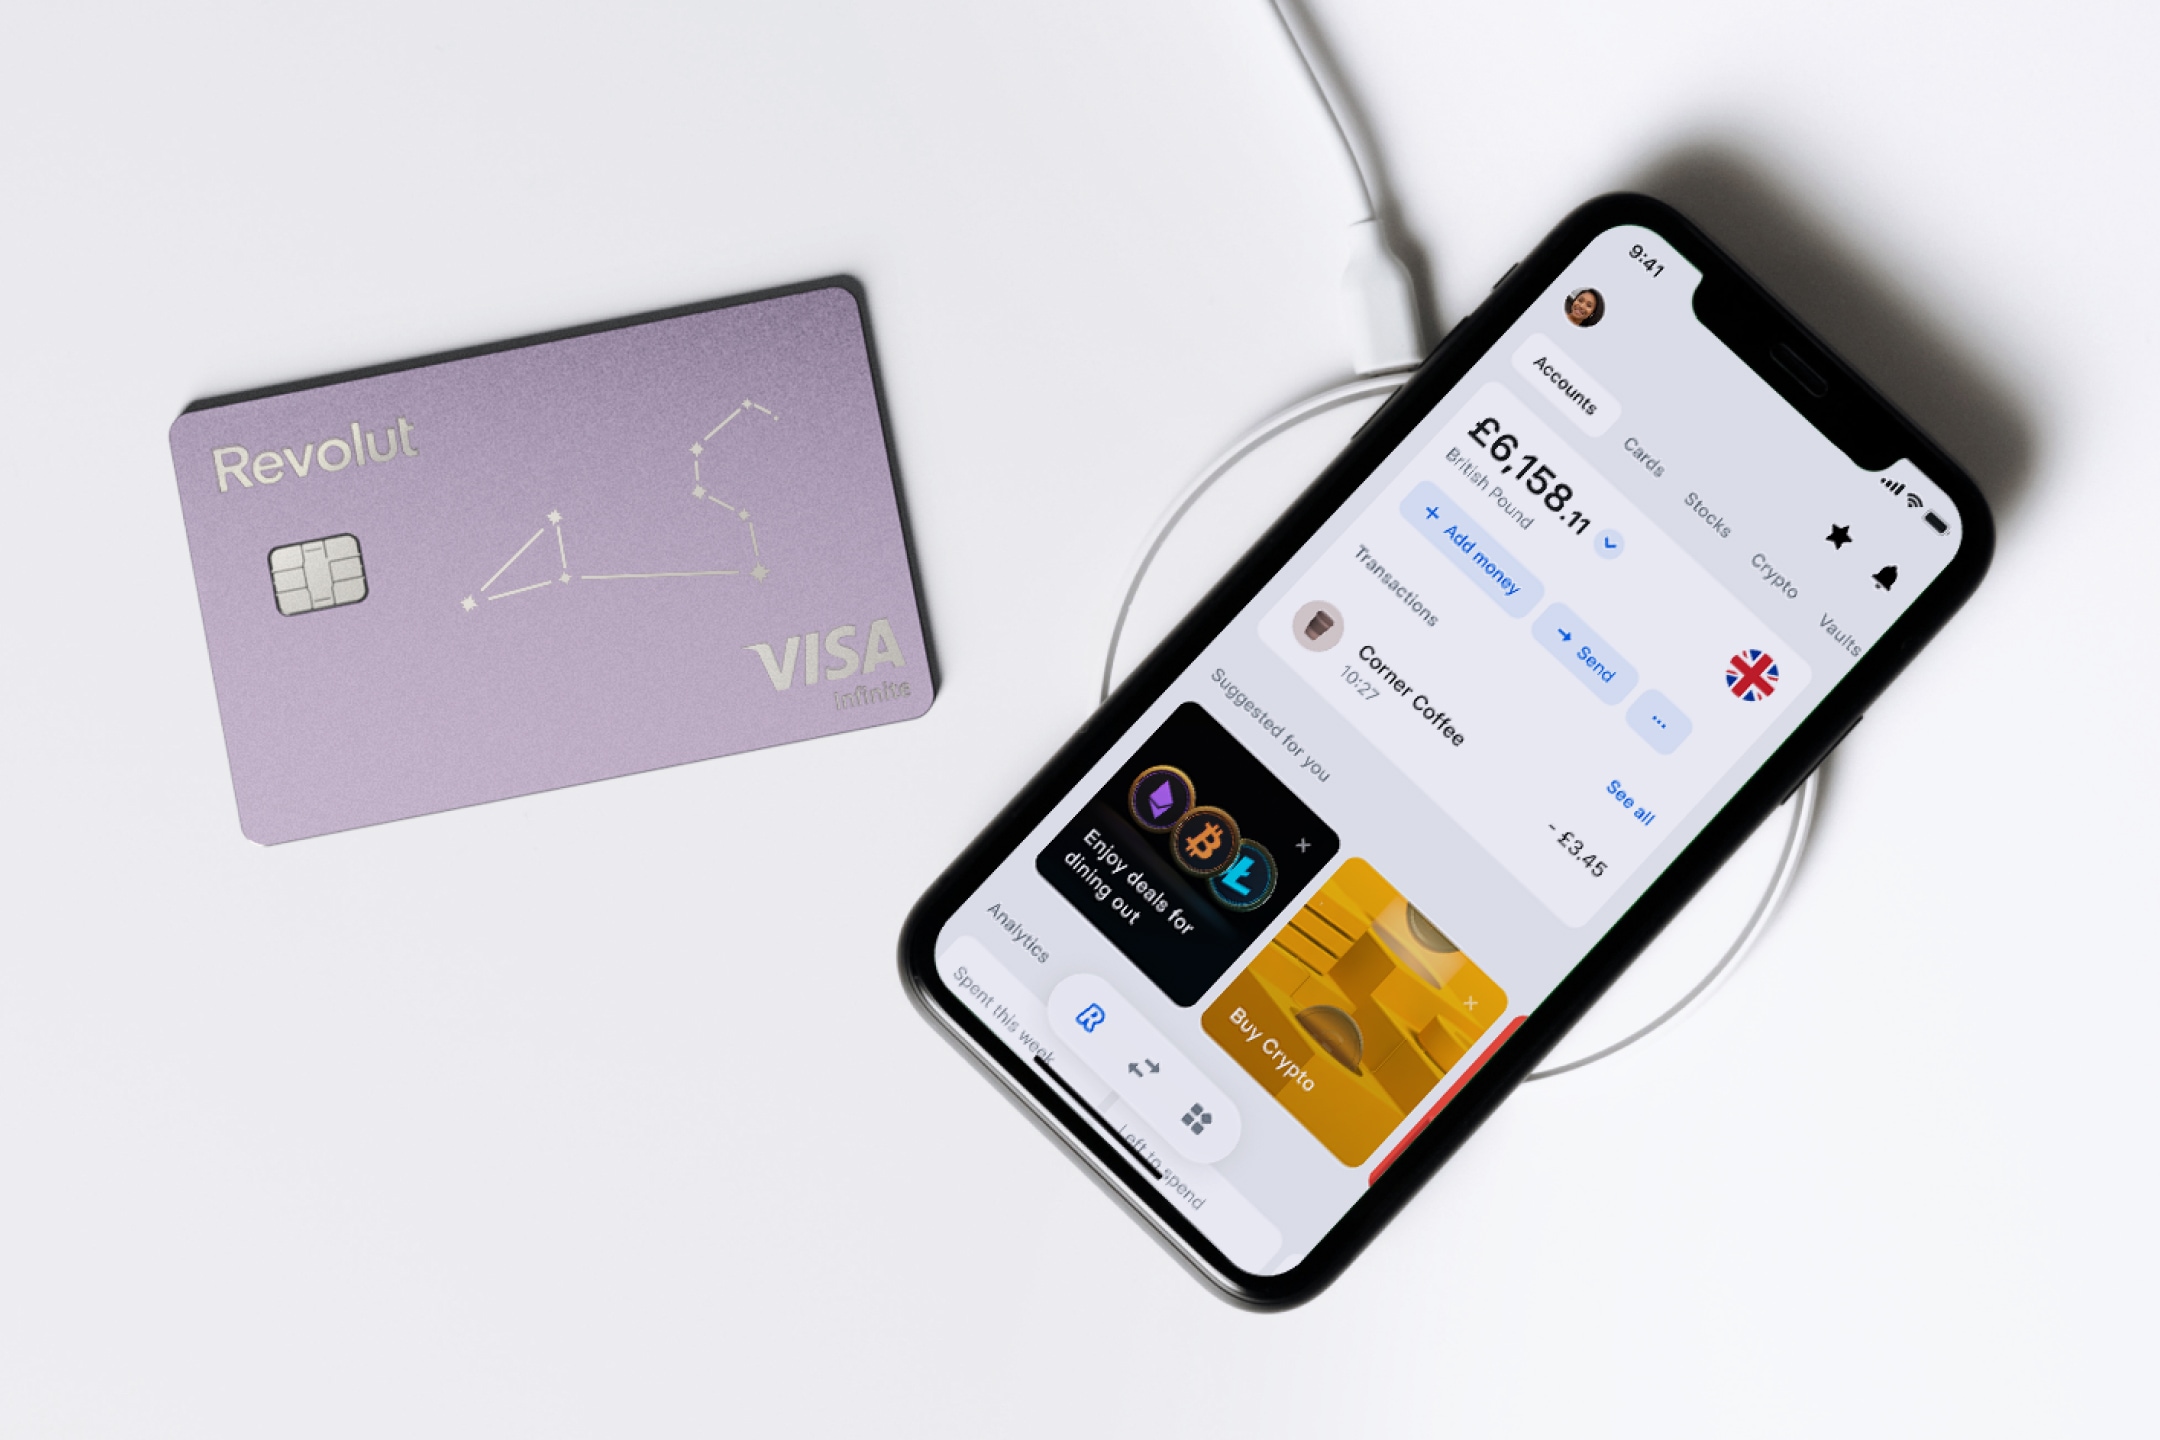 Fioletowa karta Revolut Visa Infinite obok smartfona wyświetlającego ekran aplikacji Revolut z saldem i opcjami transakcji.